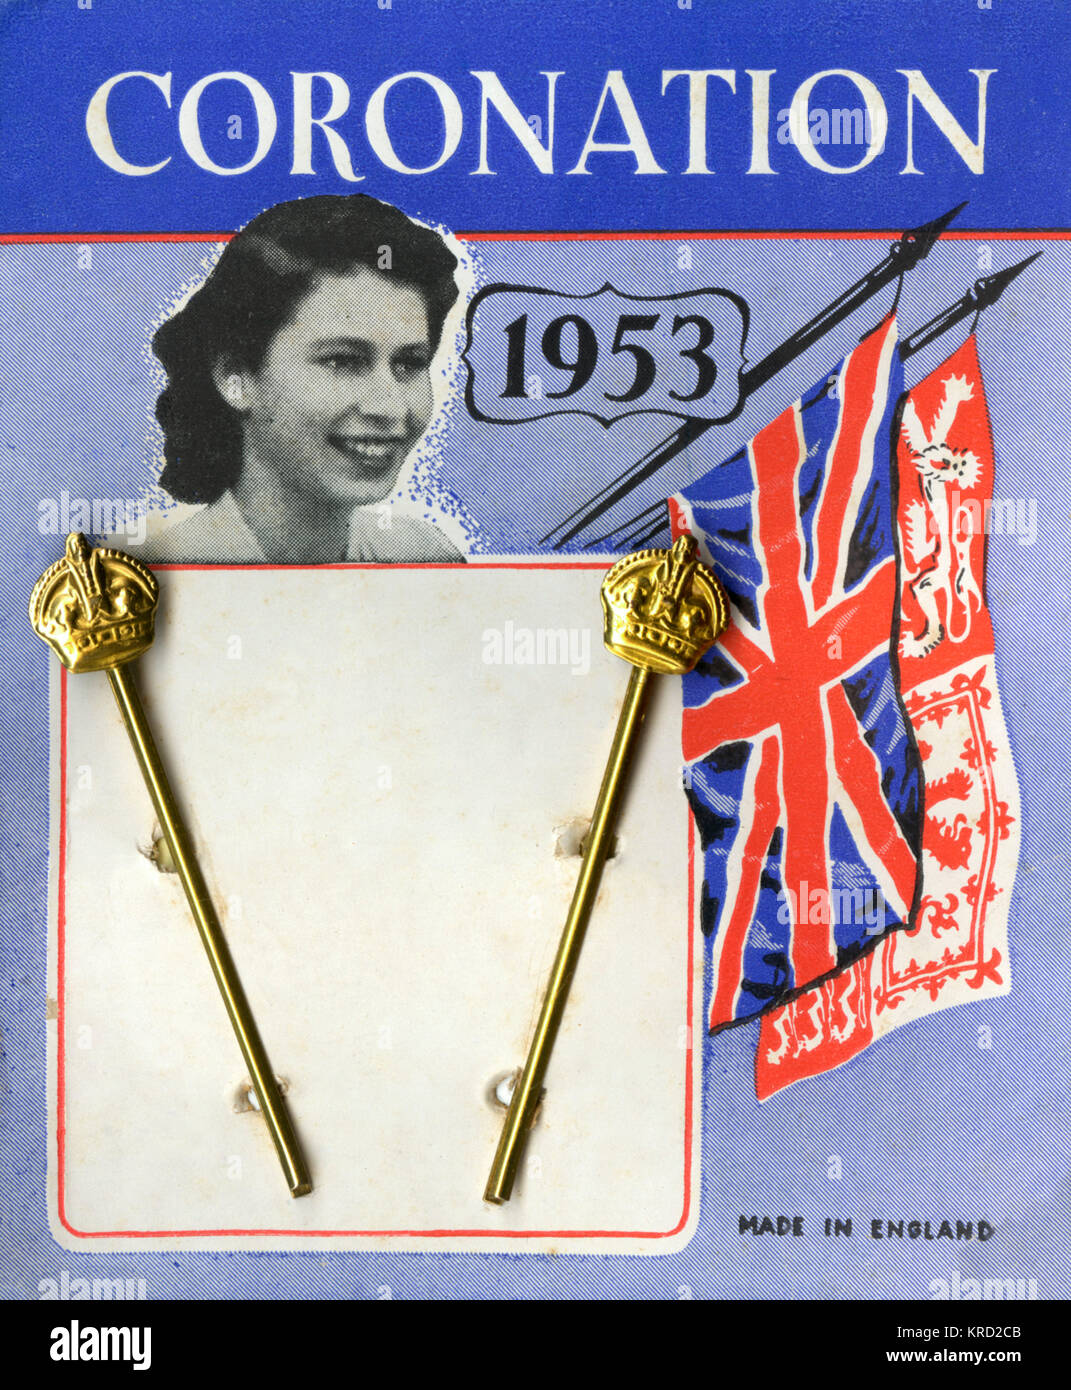 Un par de pinzas regal producida para conmemorar la coronación de la Reina Isabel II en 1953 con una pequeña corona sobre cada uno y una imagen de una joven princesa Elizabeth en el embalaje. Fecha: 1953 Foto de stock